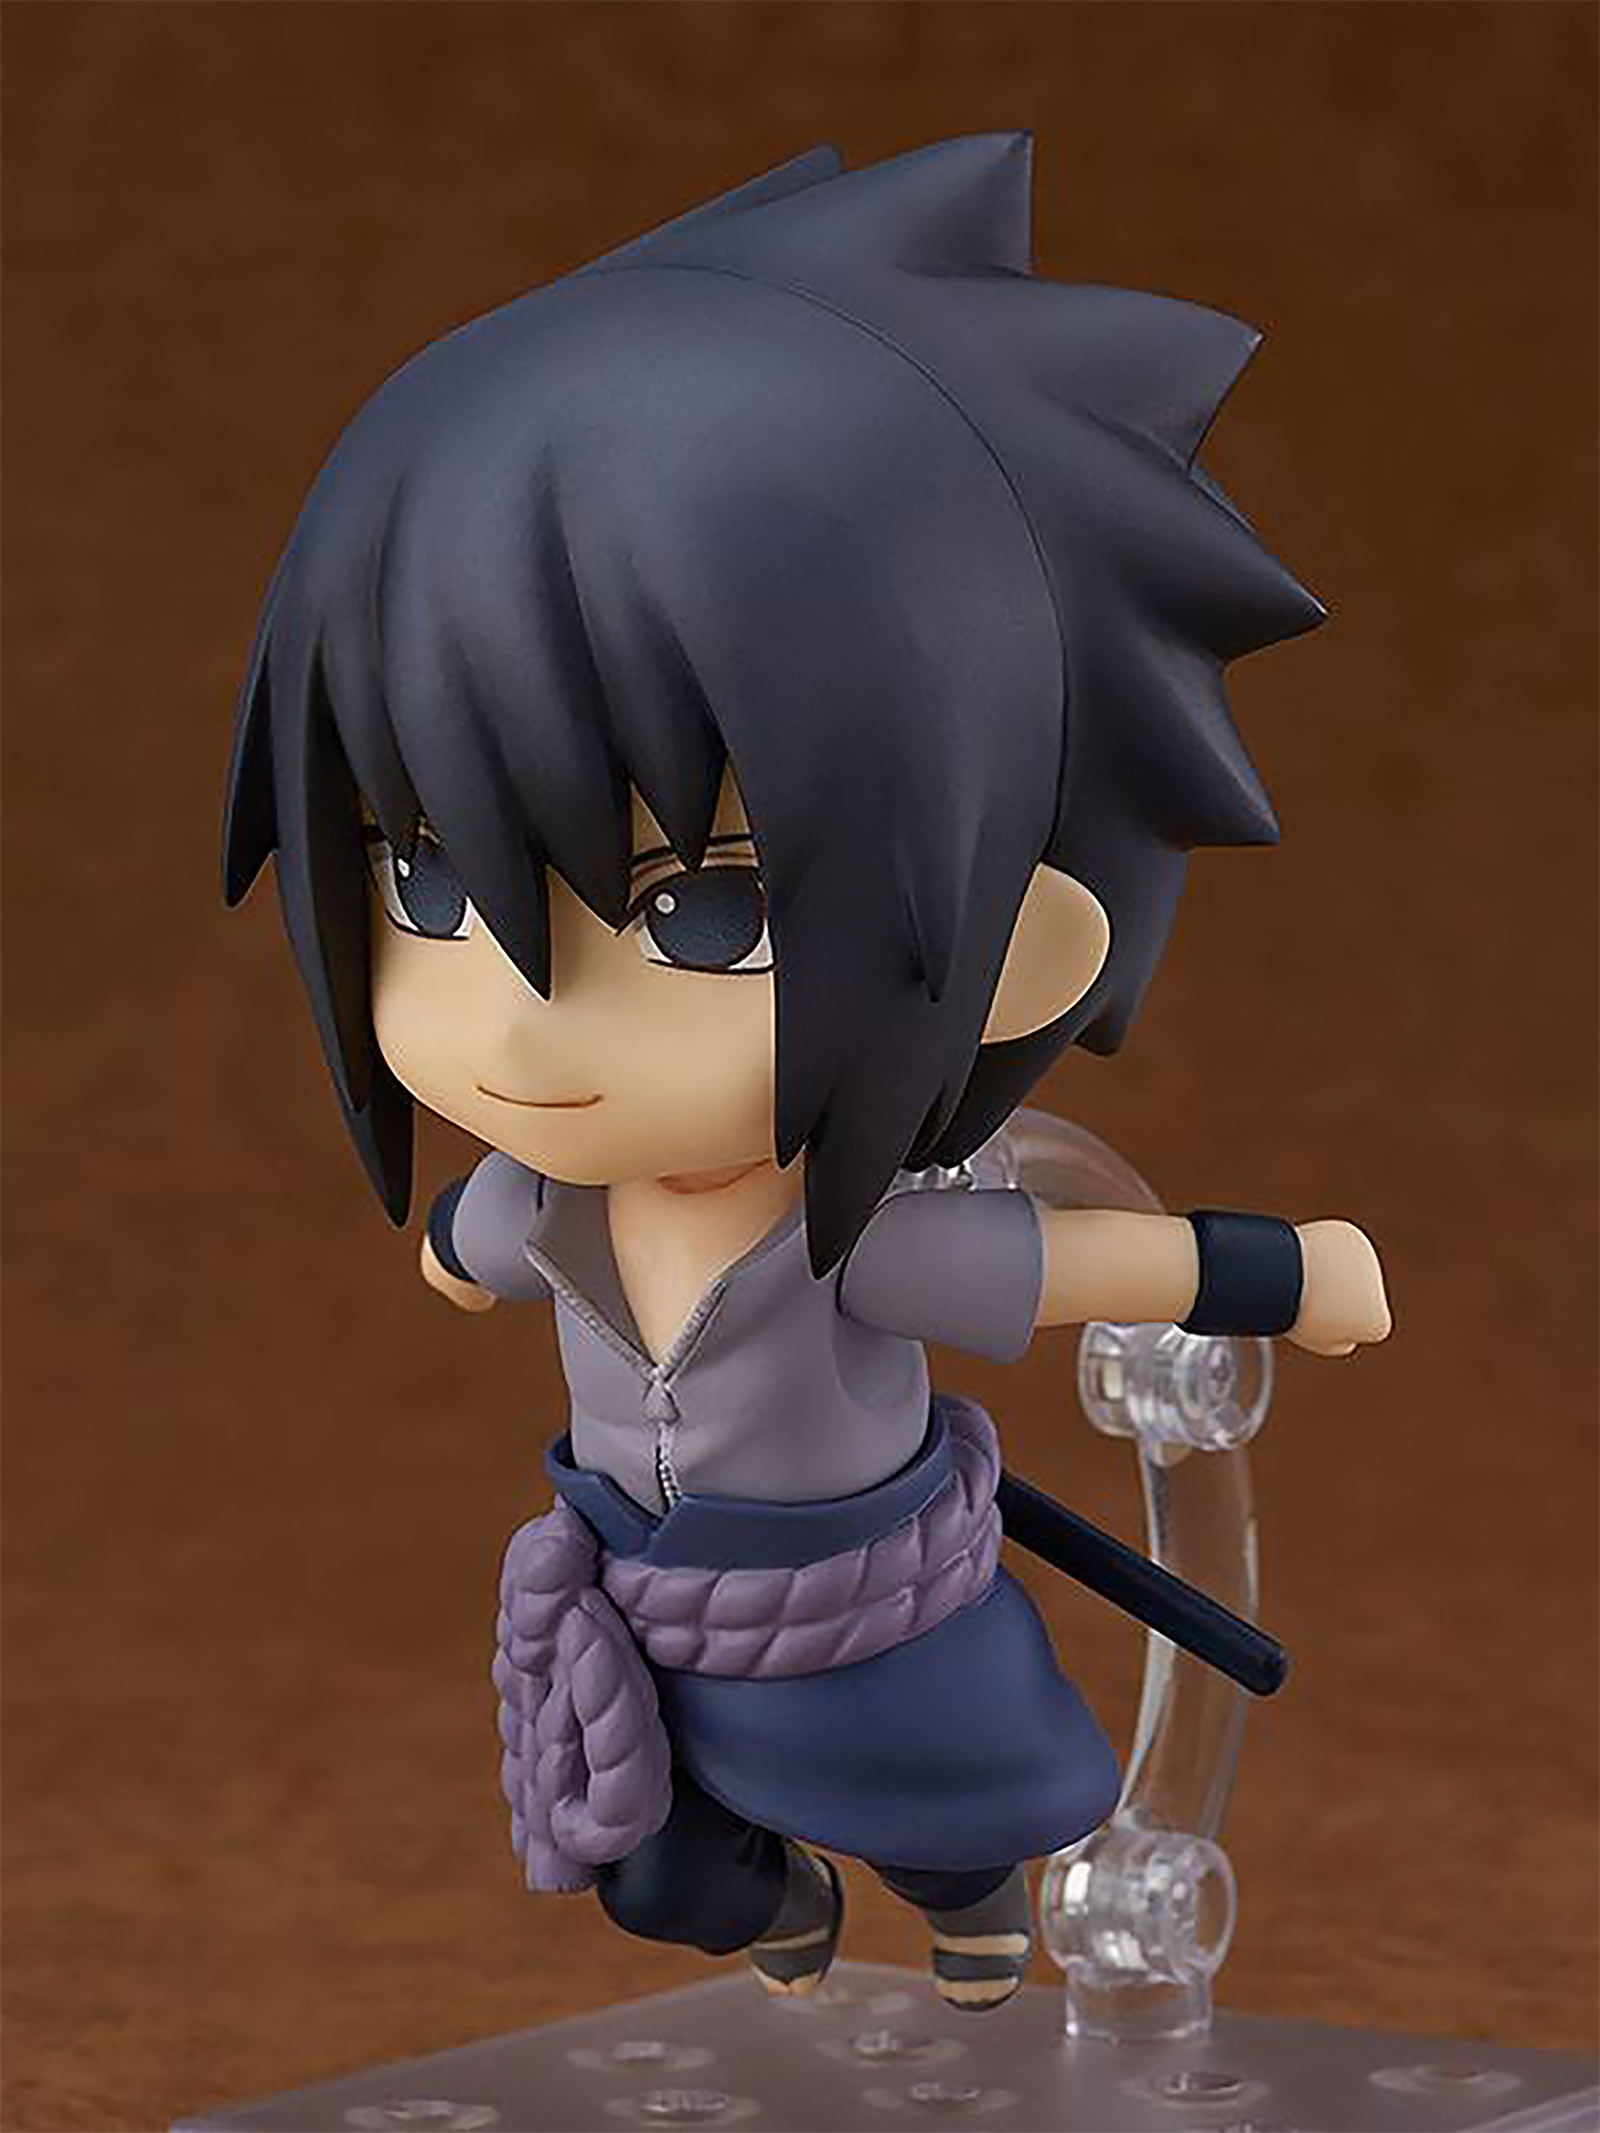 Naruto Shippuden - Sasuke Uchiha Nendoroid Action Figure